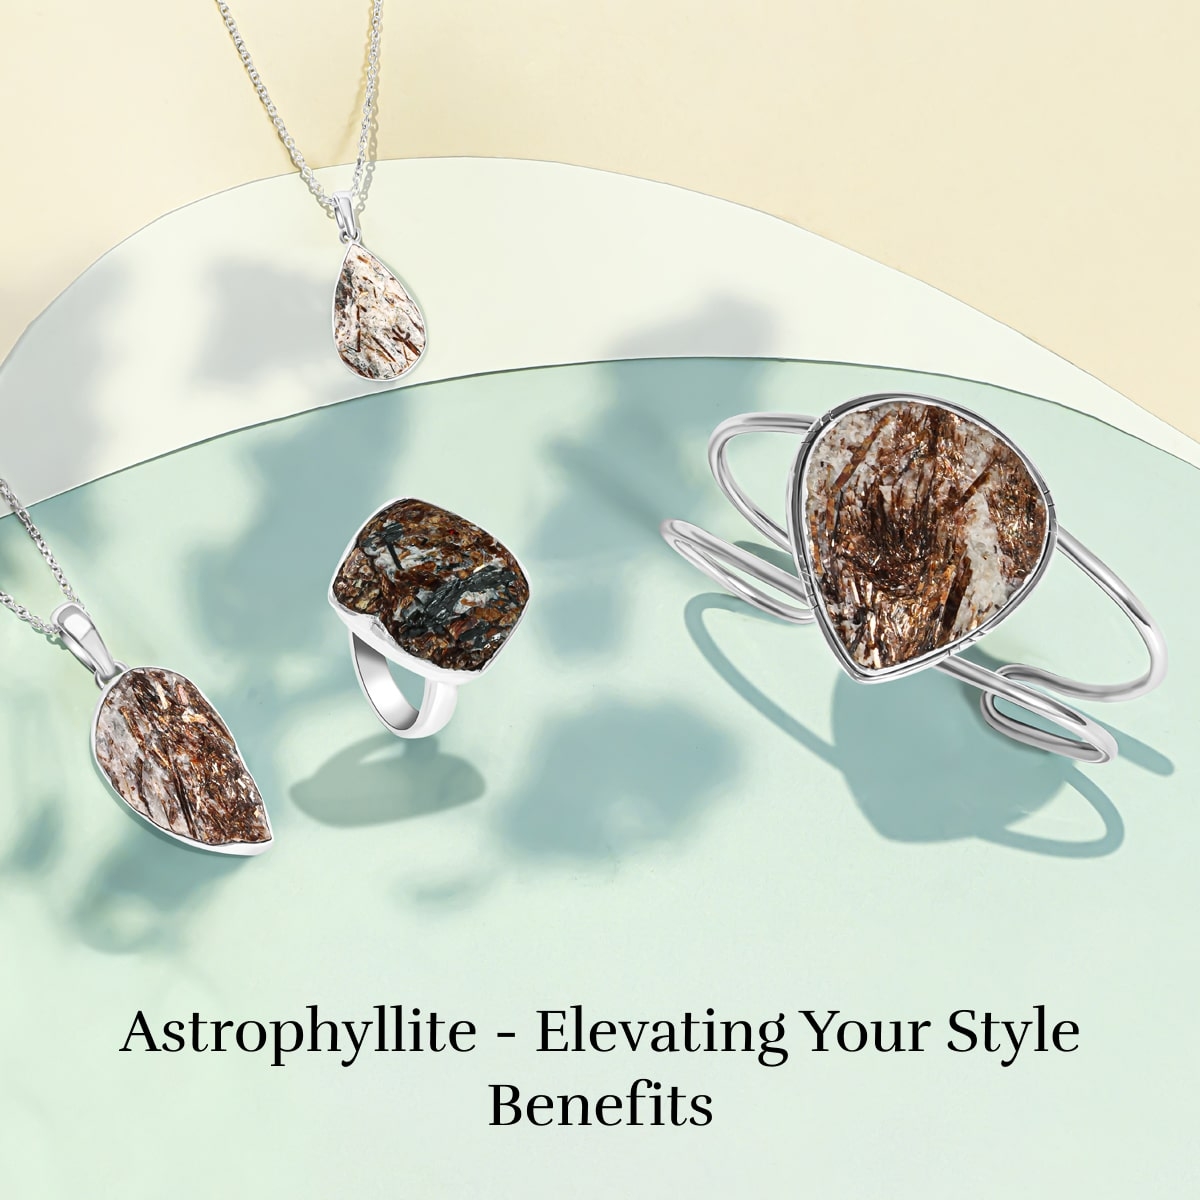 Benefits of Wearing Astrophyllite Jewel